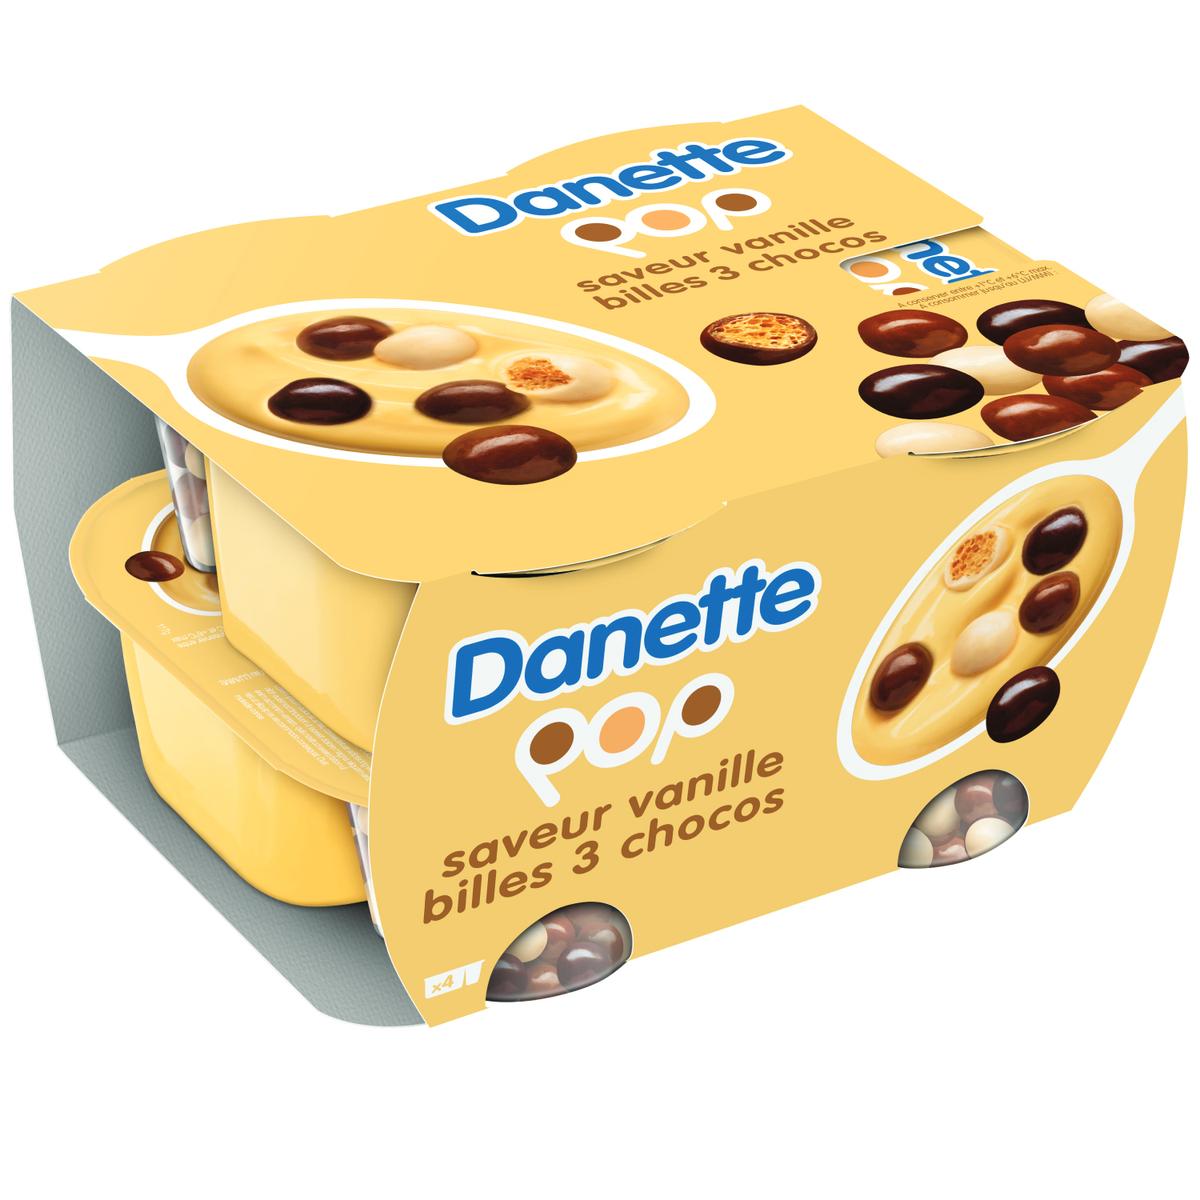 Achat / Vente Promotion Danette Caramel, Lot de 2 paquets de 4x125g